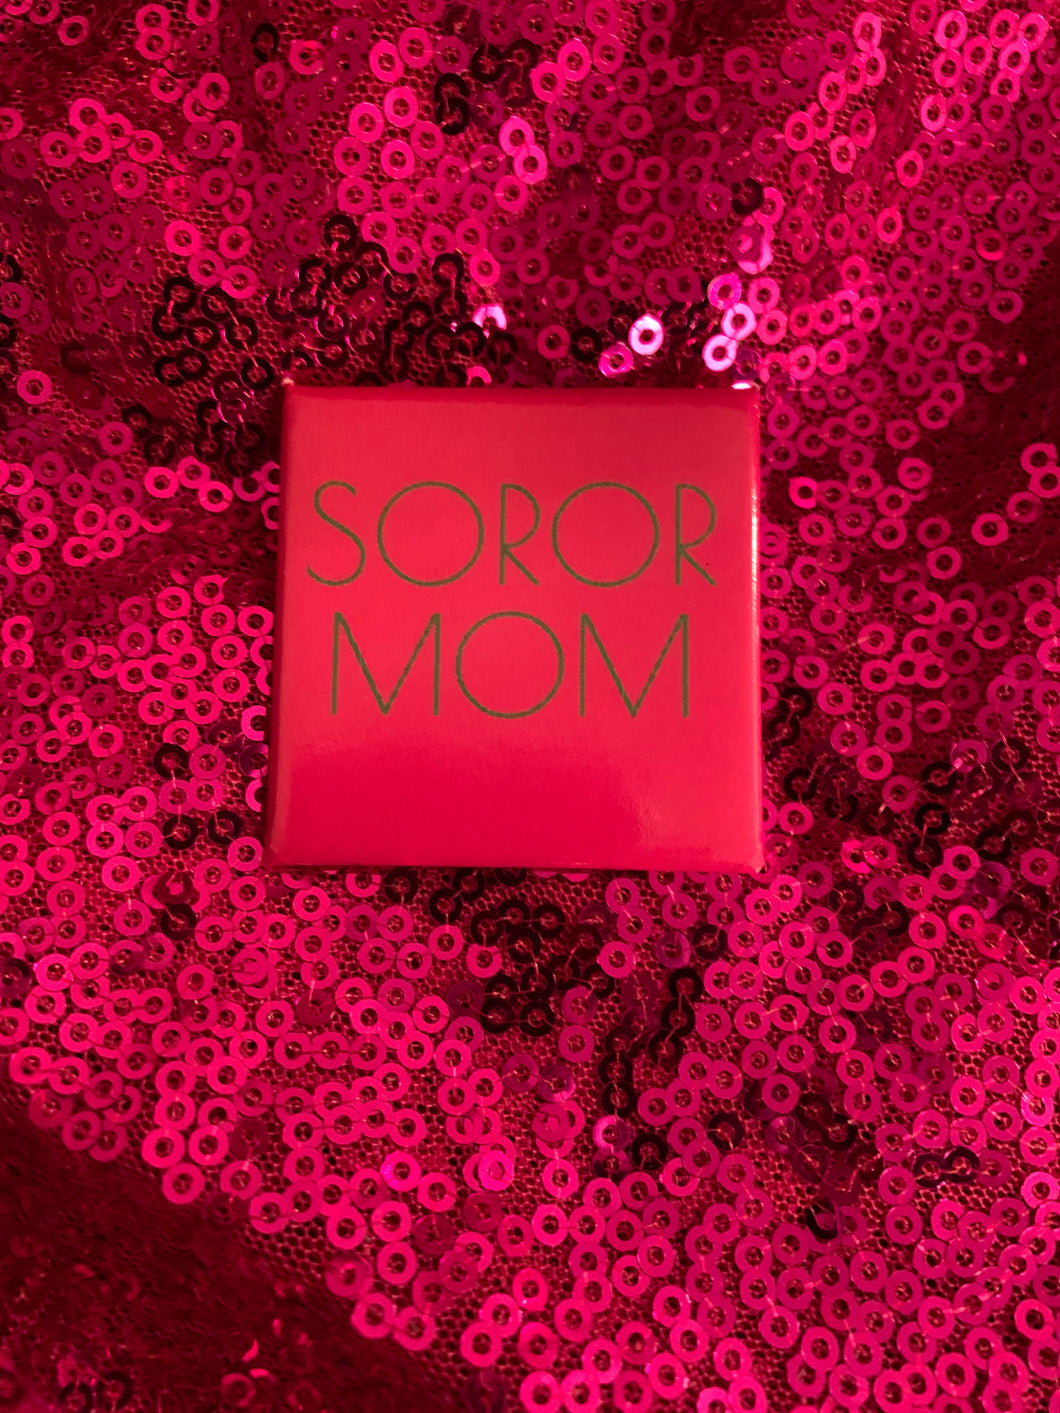 Pretty Soror Mom Button